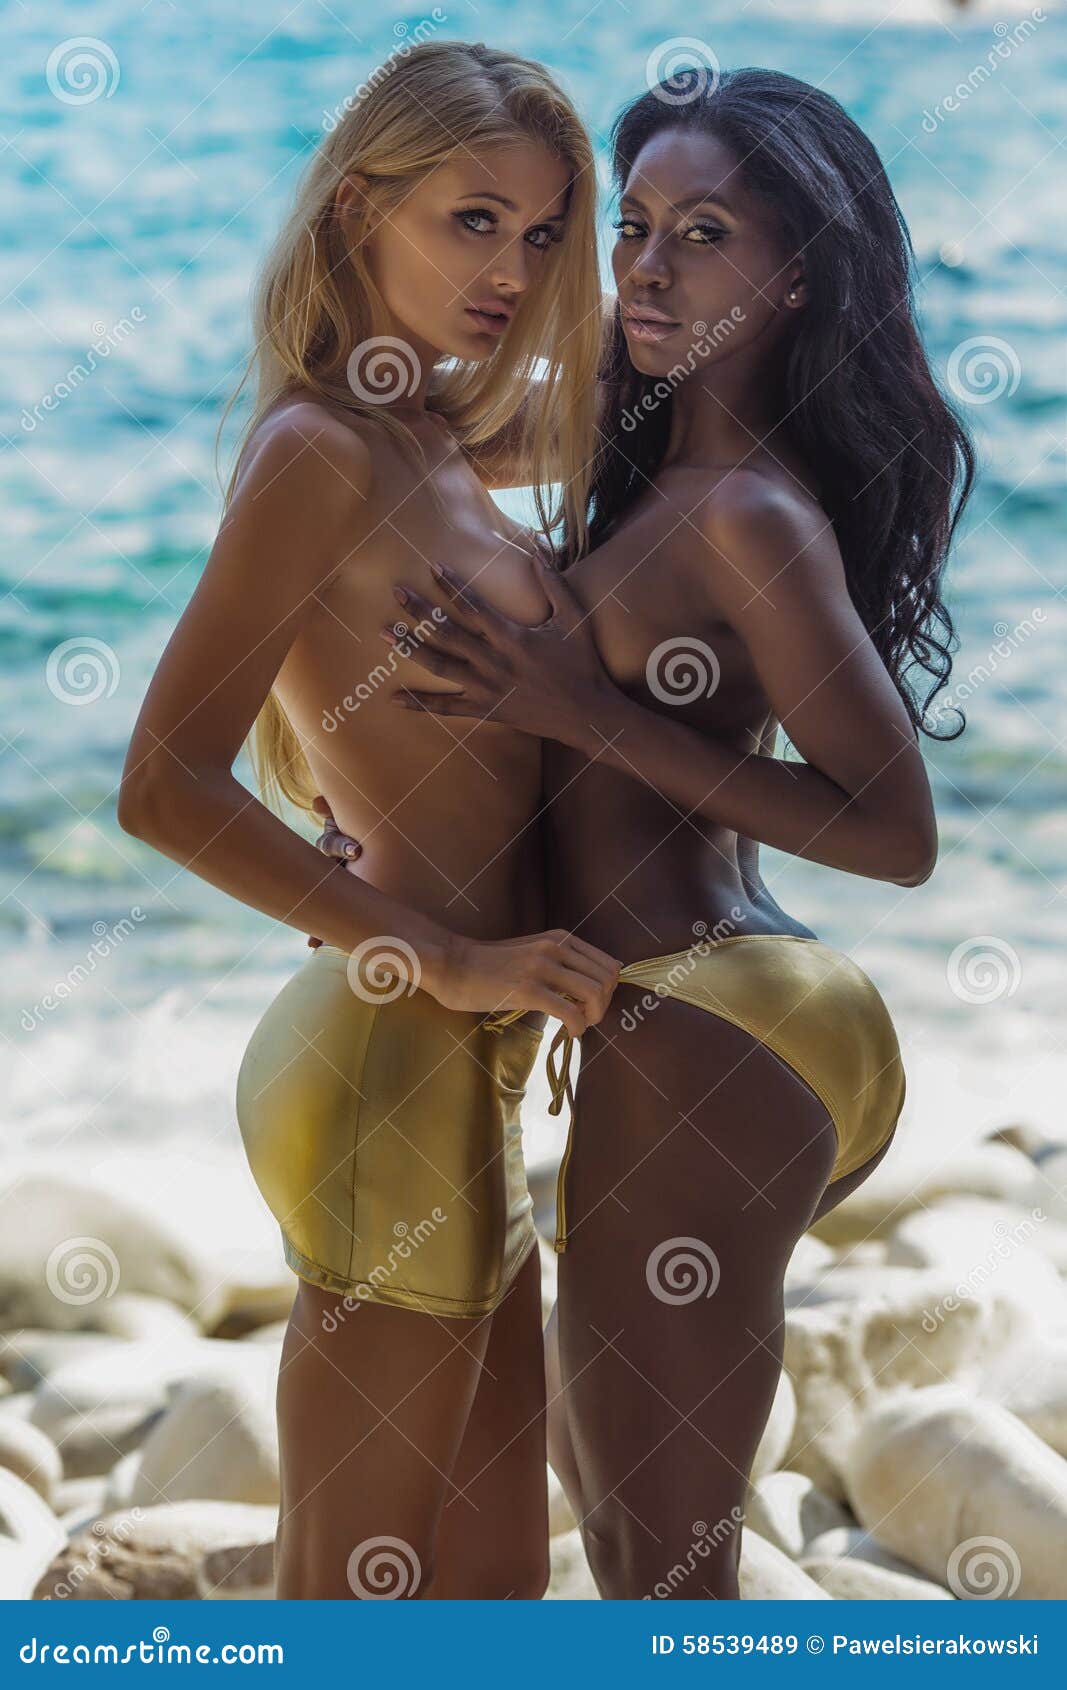 Kethryn Heigl Beautiful Naked Beach Girls